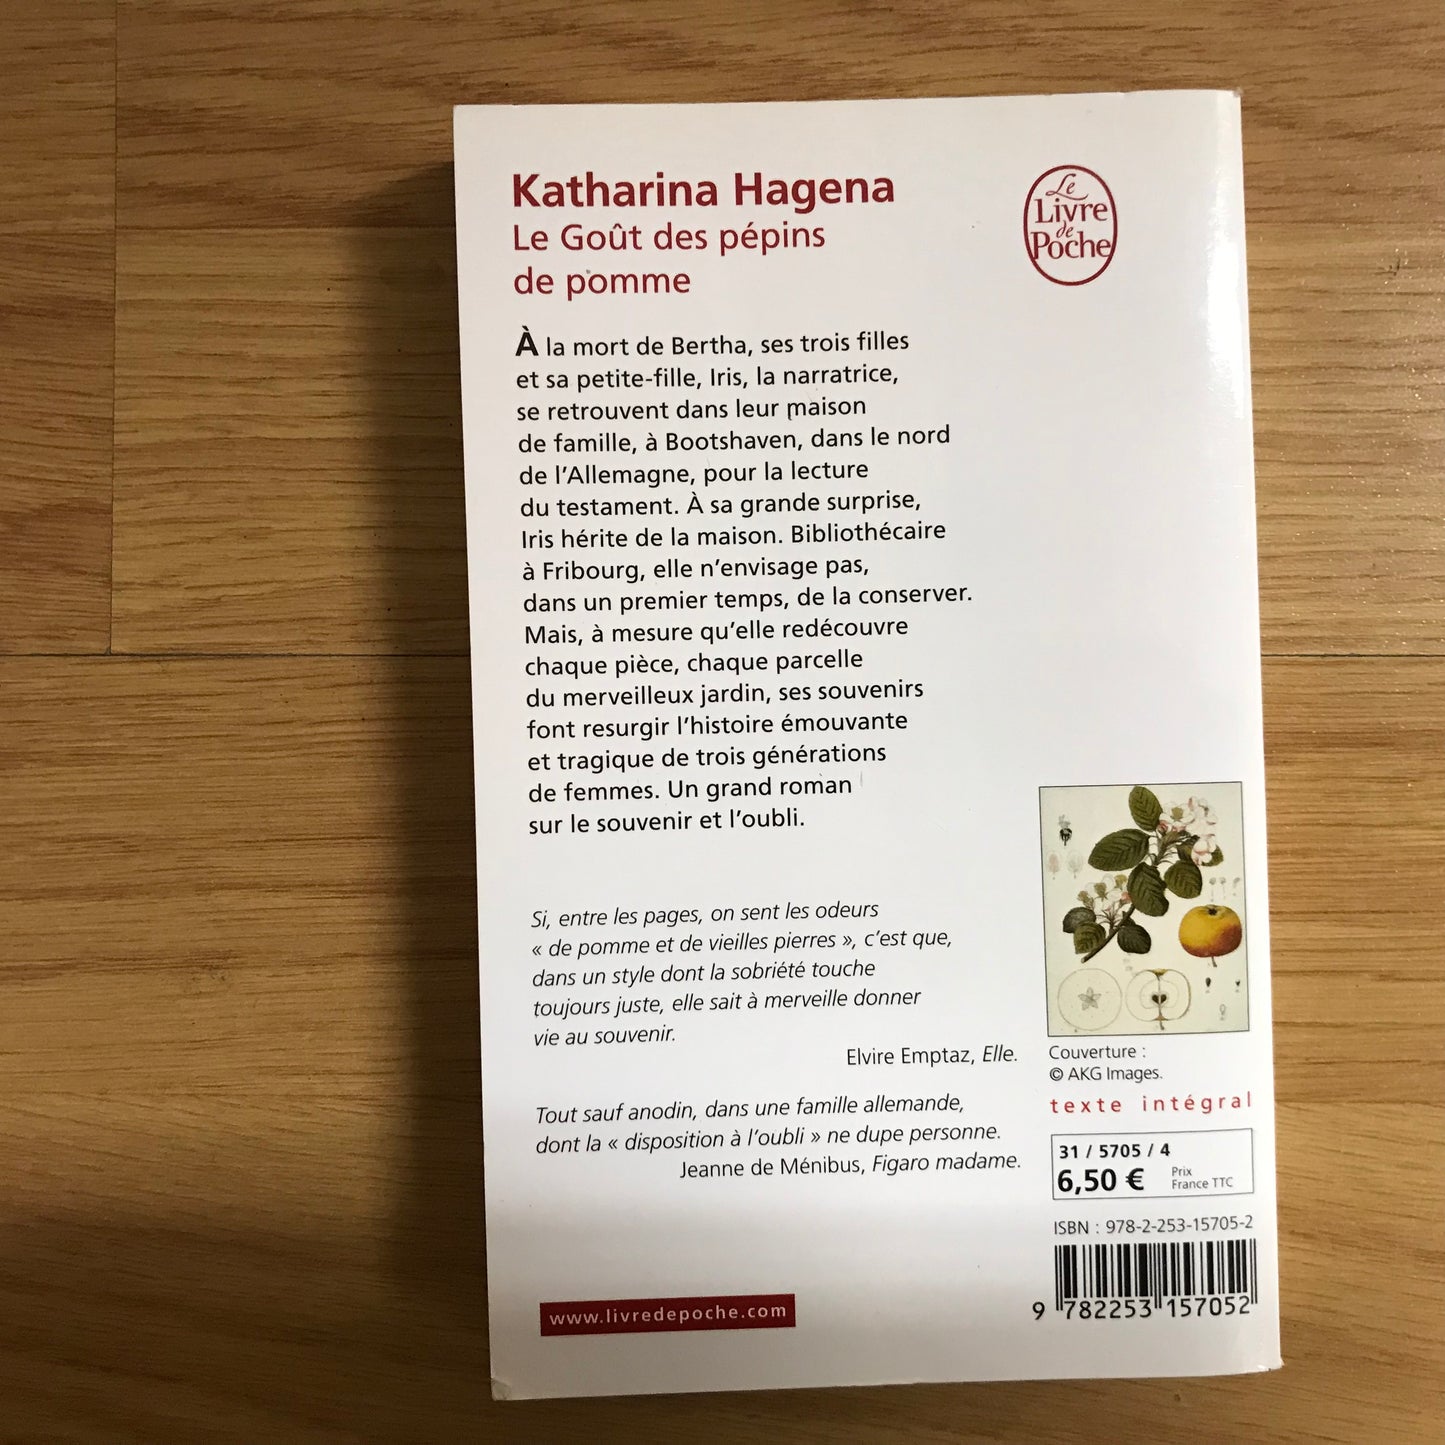 Hagena, Katharina - Le goût des pépins de pomme